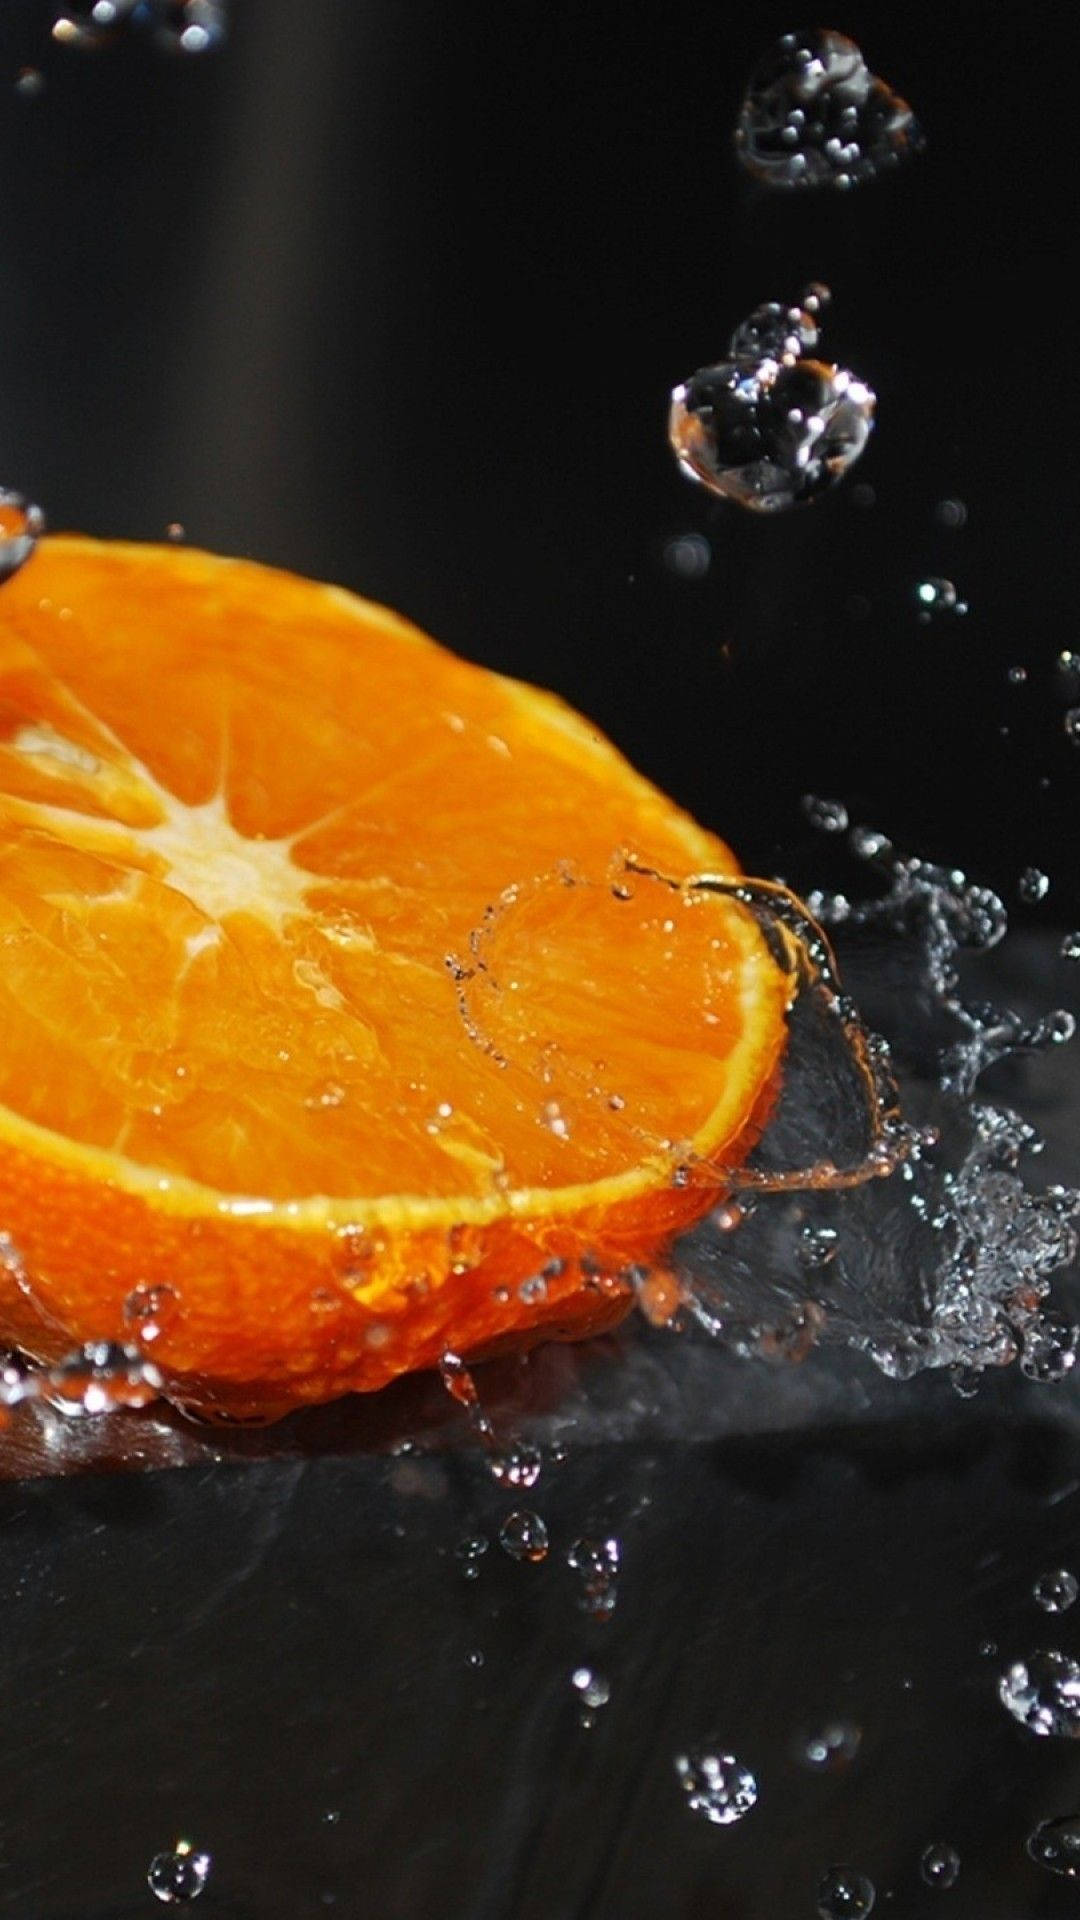 Orange Fruit With Water Splashes